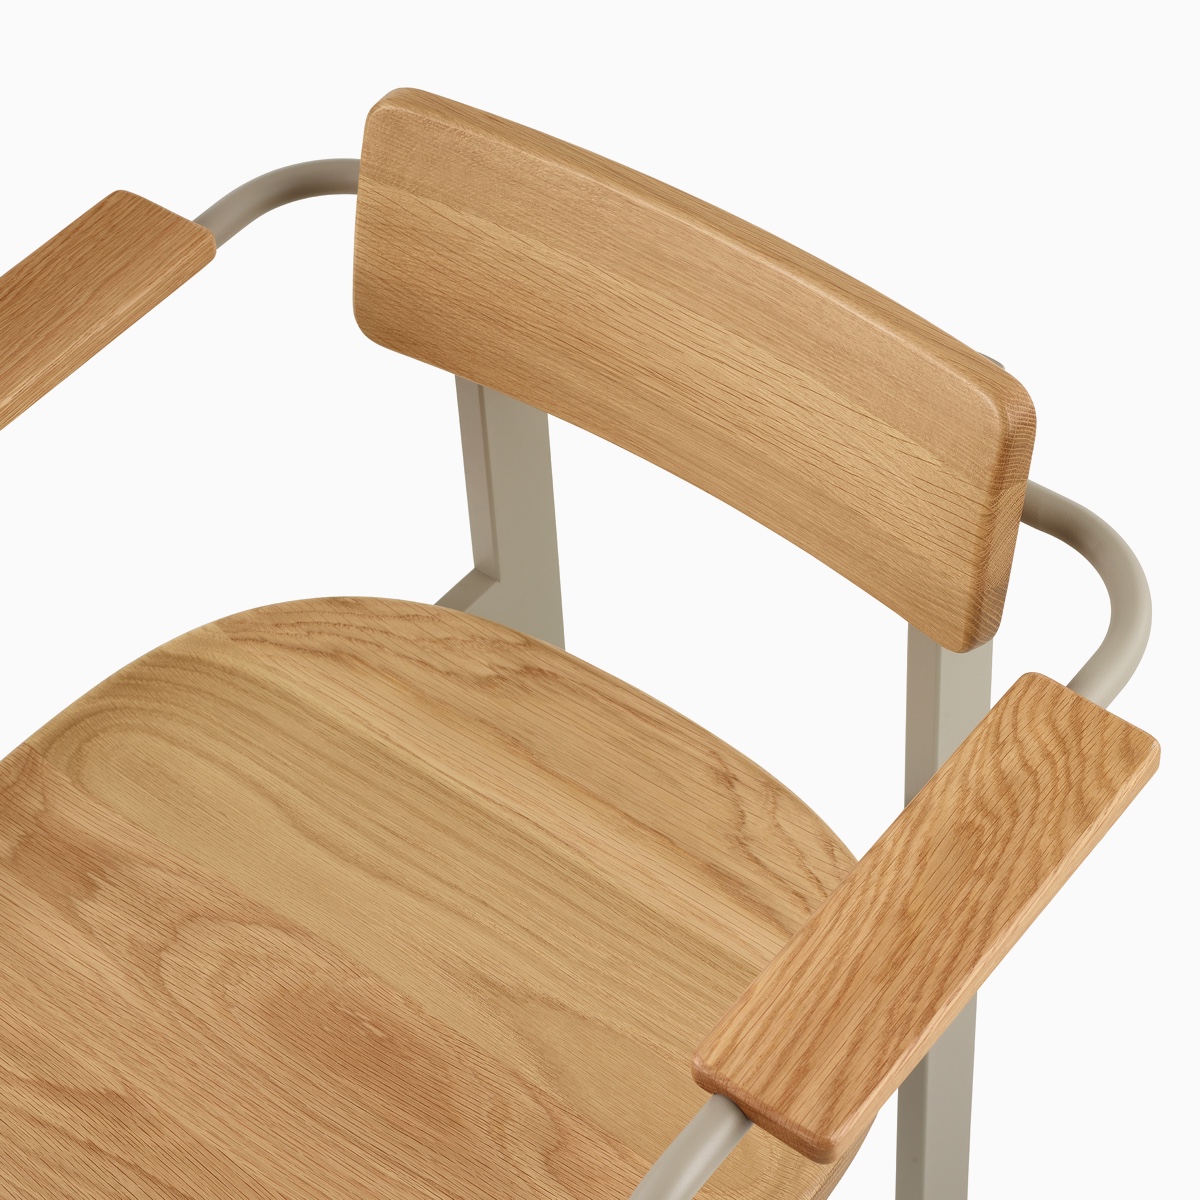 Nahansicht eines Betwixt Stuhls mit Rückenlehne, Sitzfläche und Armlehnen in Eiche sowie Rahmen in Grau.